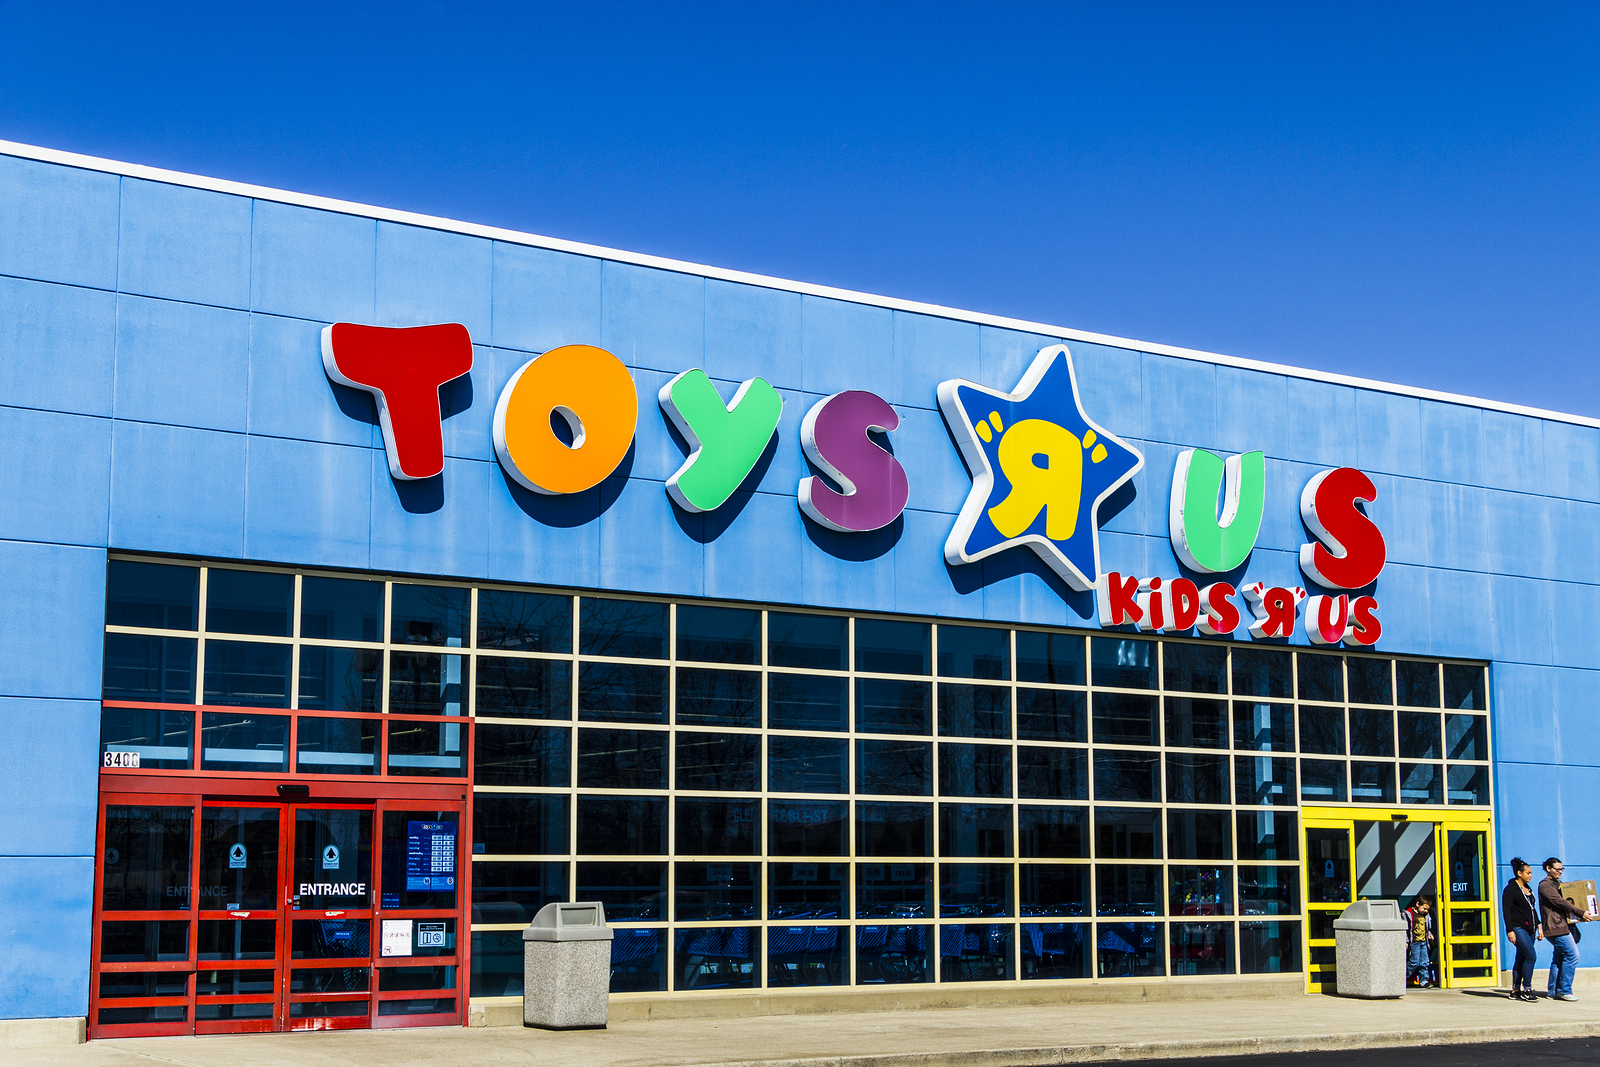 Cadeia de loja de brinquedos Toys R Us vai fechar ou vender todas